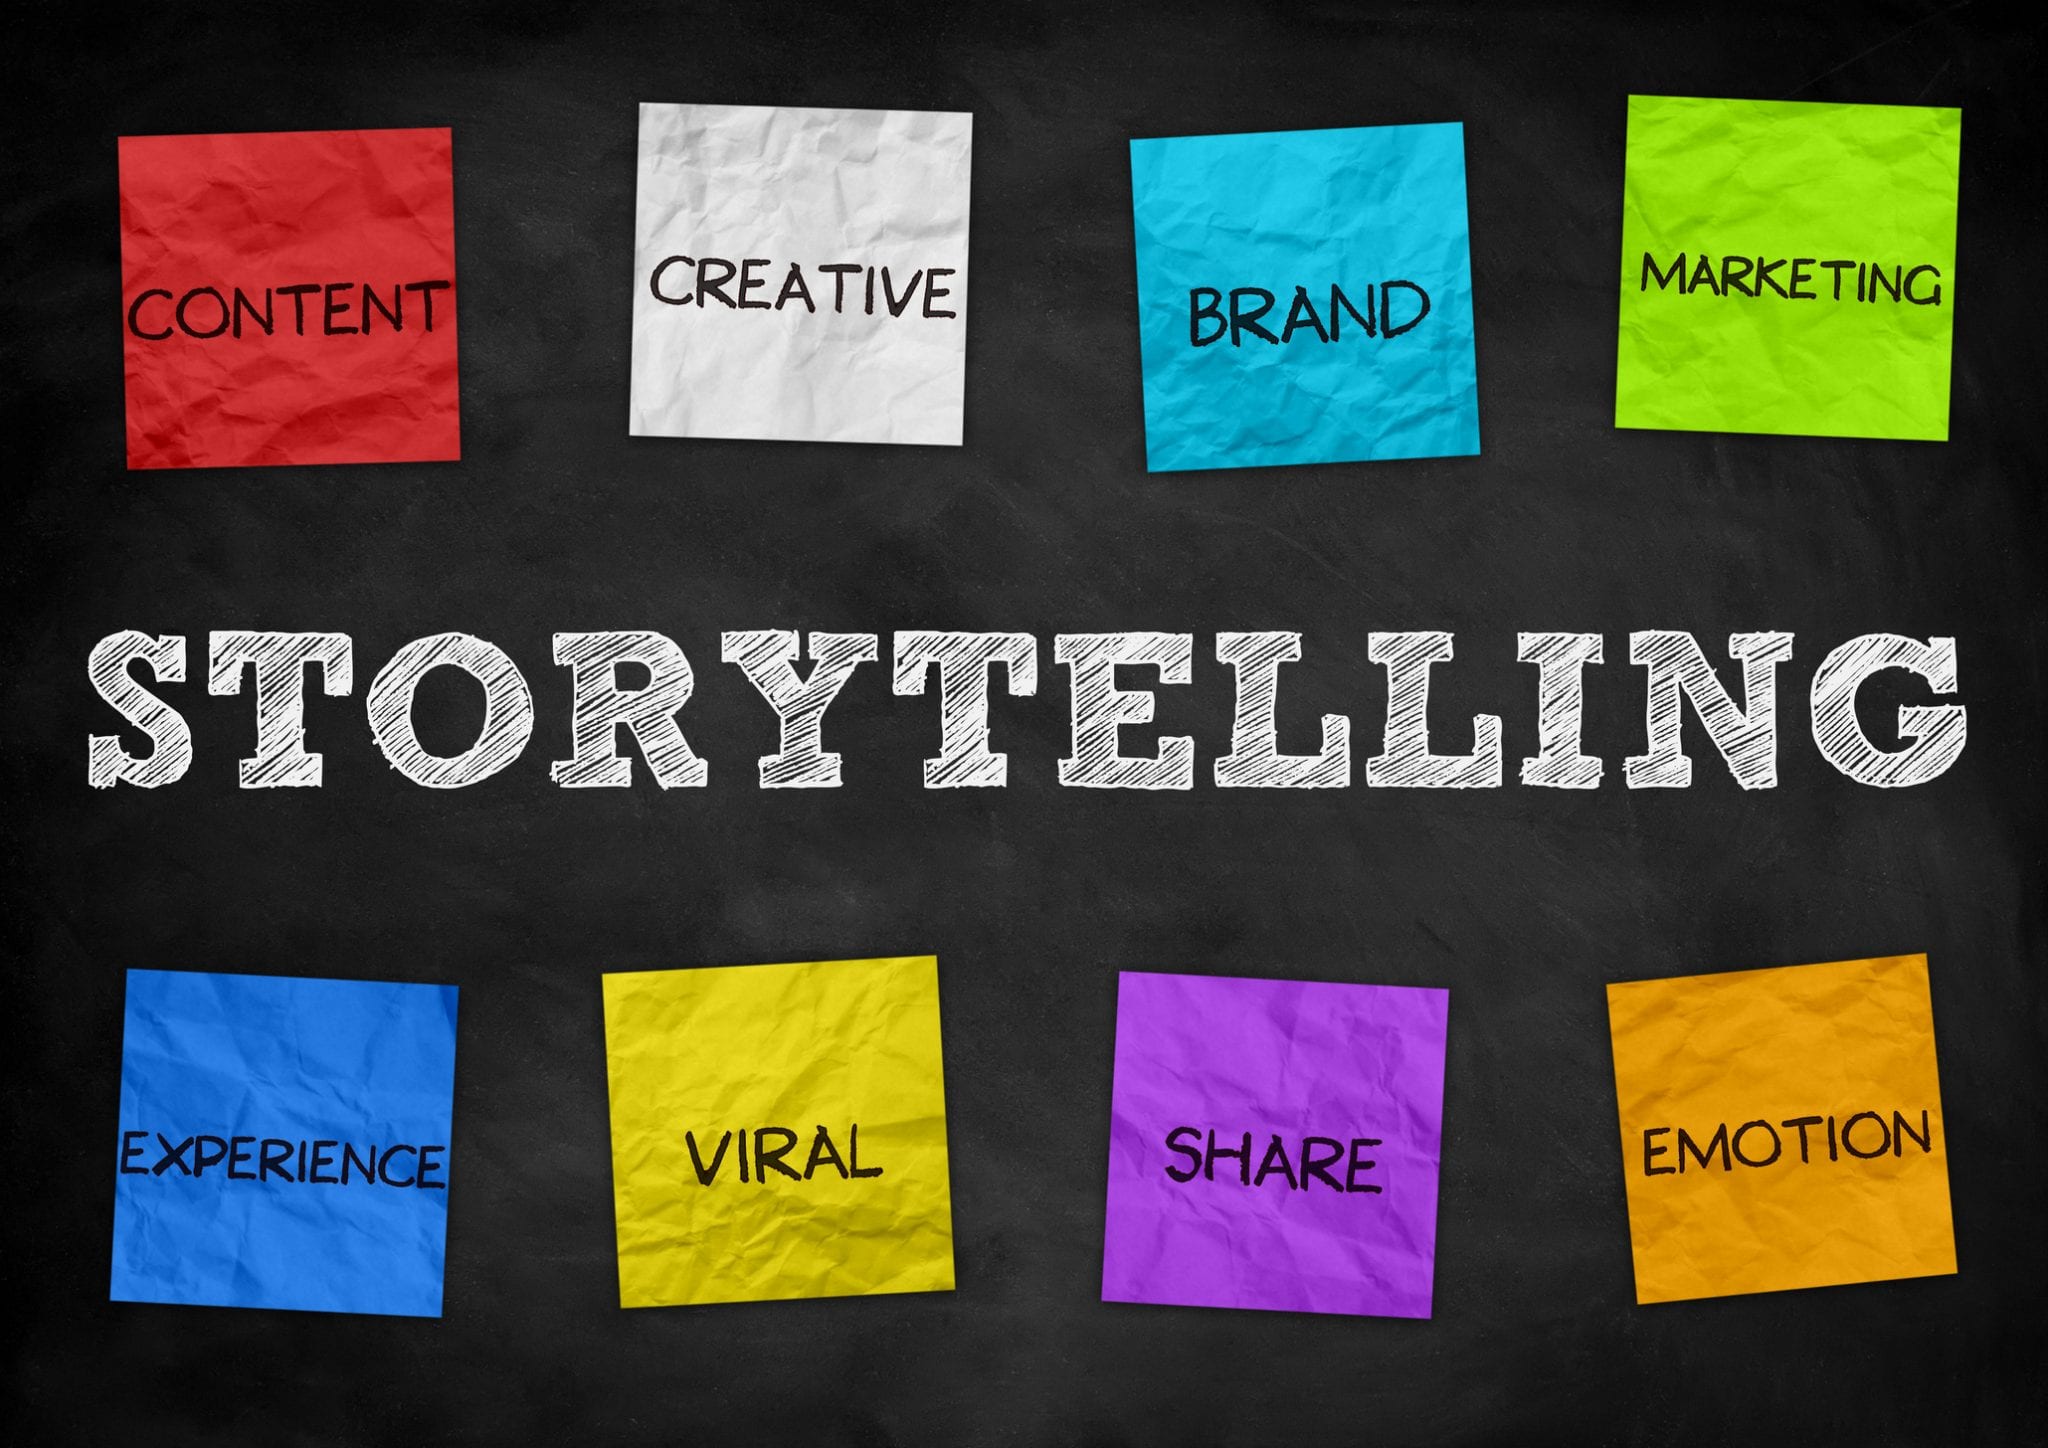 storytelling method